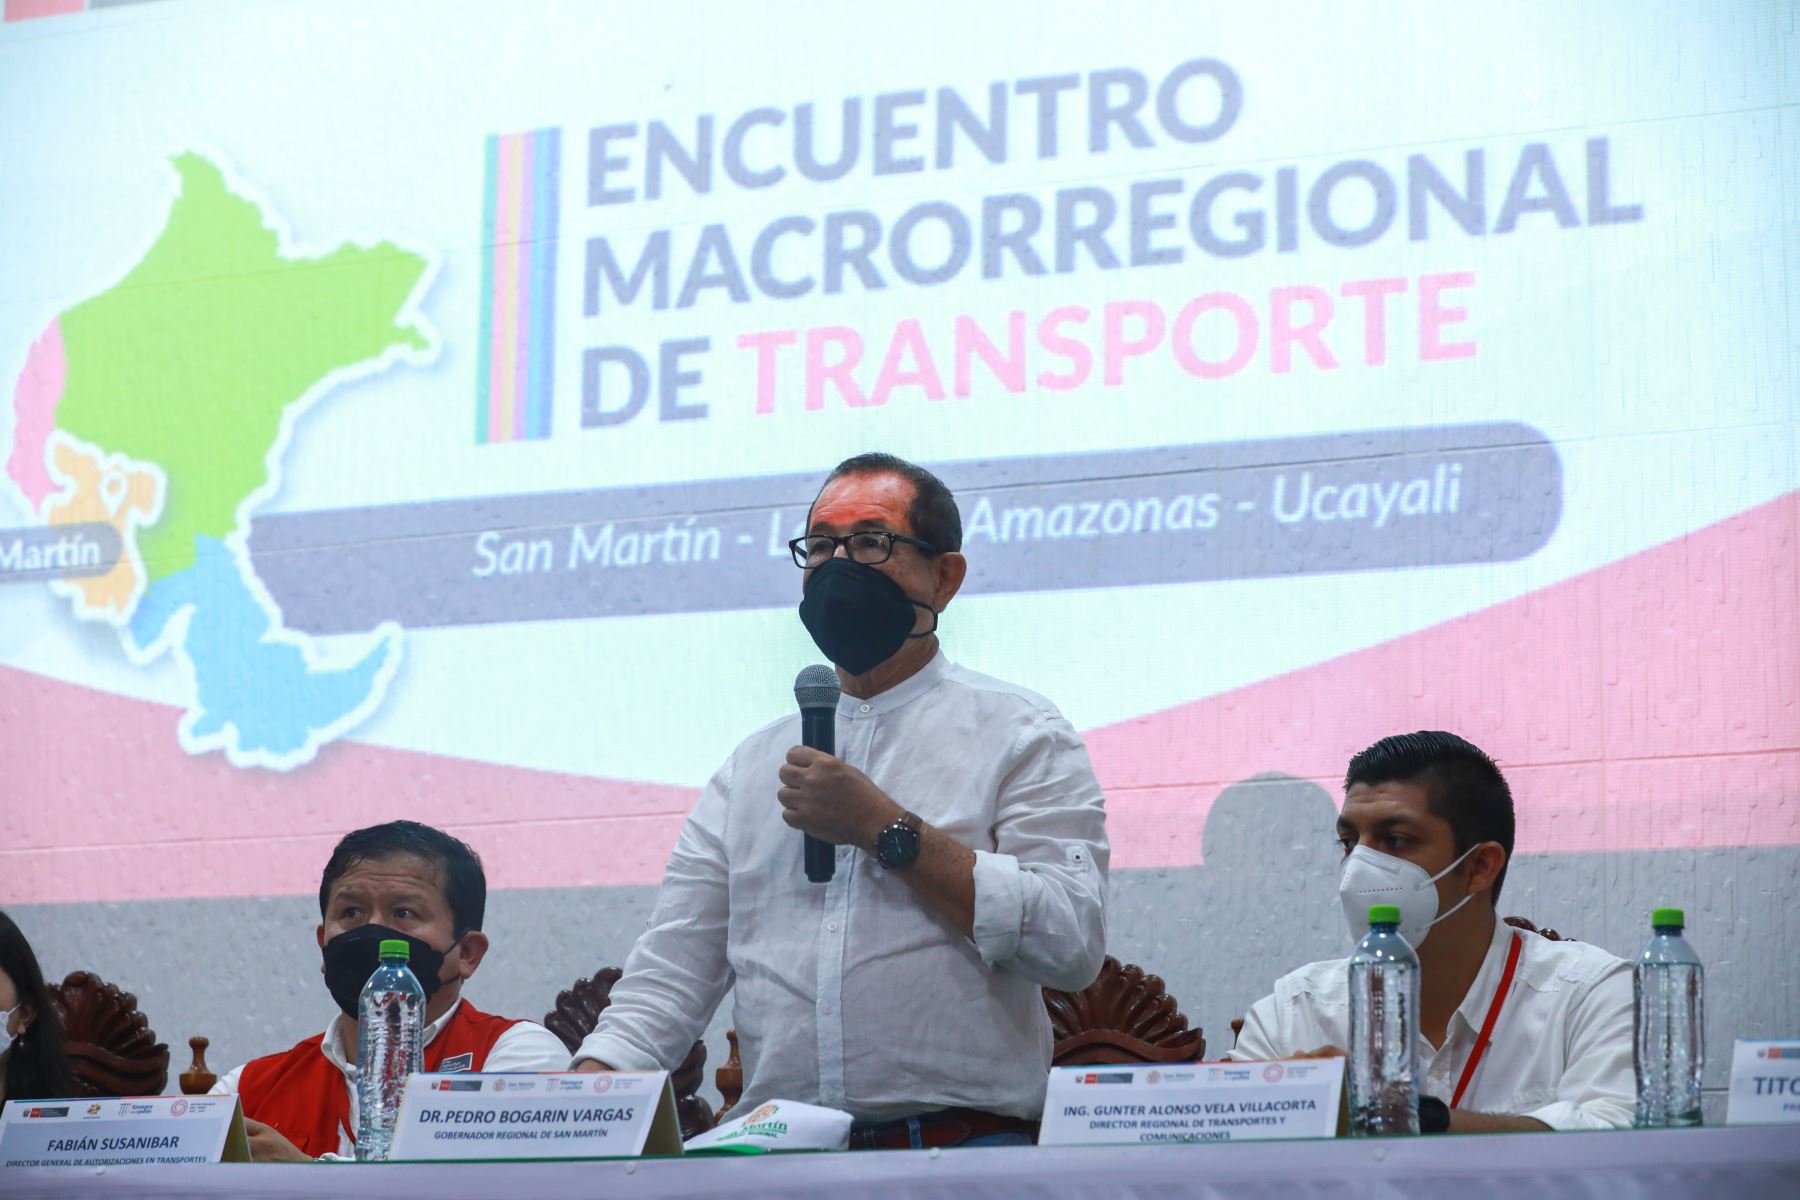 El ministro de Transportes y Comunicaciones, Juan Barranzuela Quiroga, inauguró el Encuentro Macrorregional de Transporte que reúne a autoridades, transportistas y representantes de la sociedad civil de San Martín, Ucayali, Loreto y Amazonas.
Foto: ANDINA/MTC